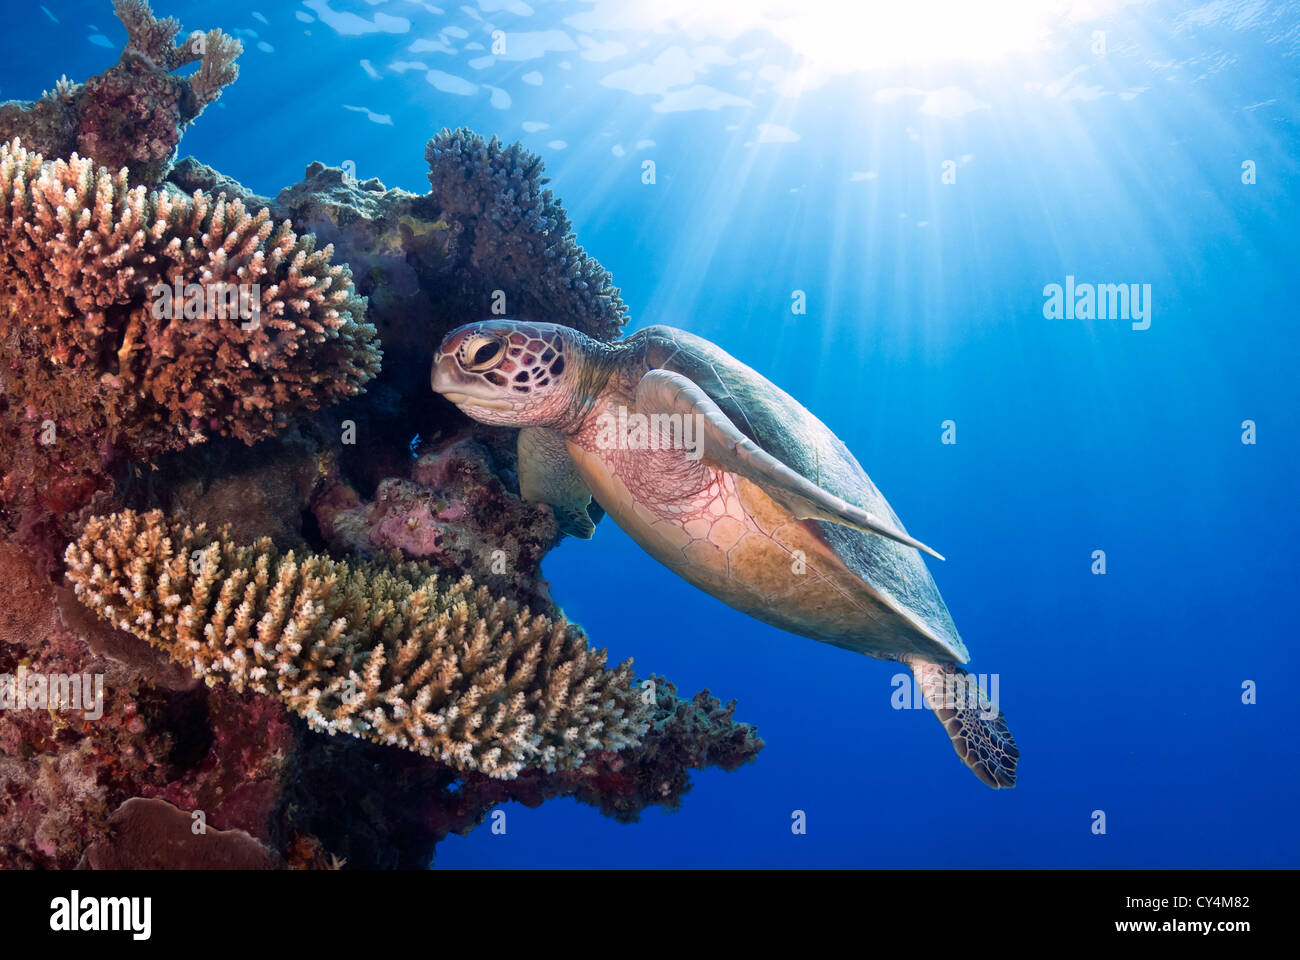 Tortue verte Chelonia mydas natation sur un récif de corail, Mer de Corail, Grande Barrière de corail, l'océan Pacifique, Queensland Australie Banque D'Images